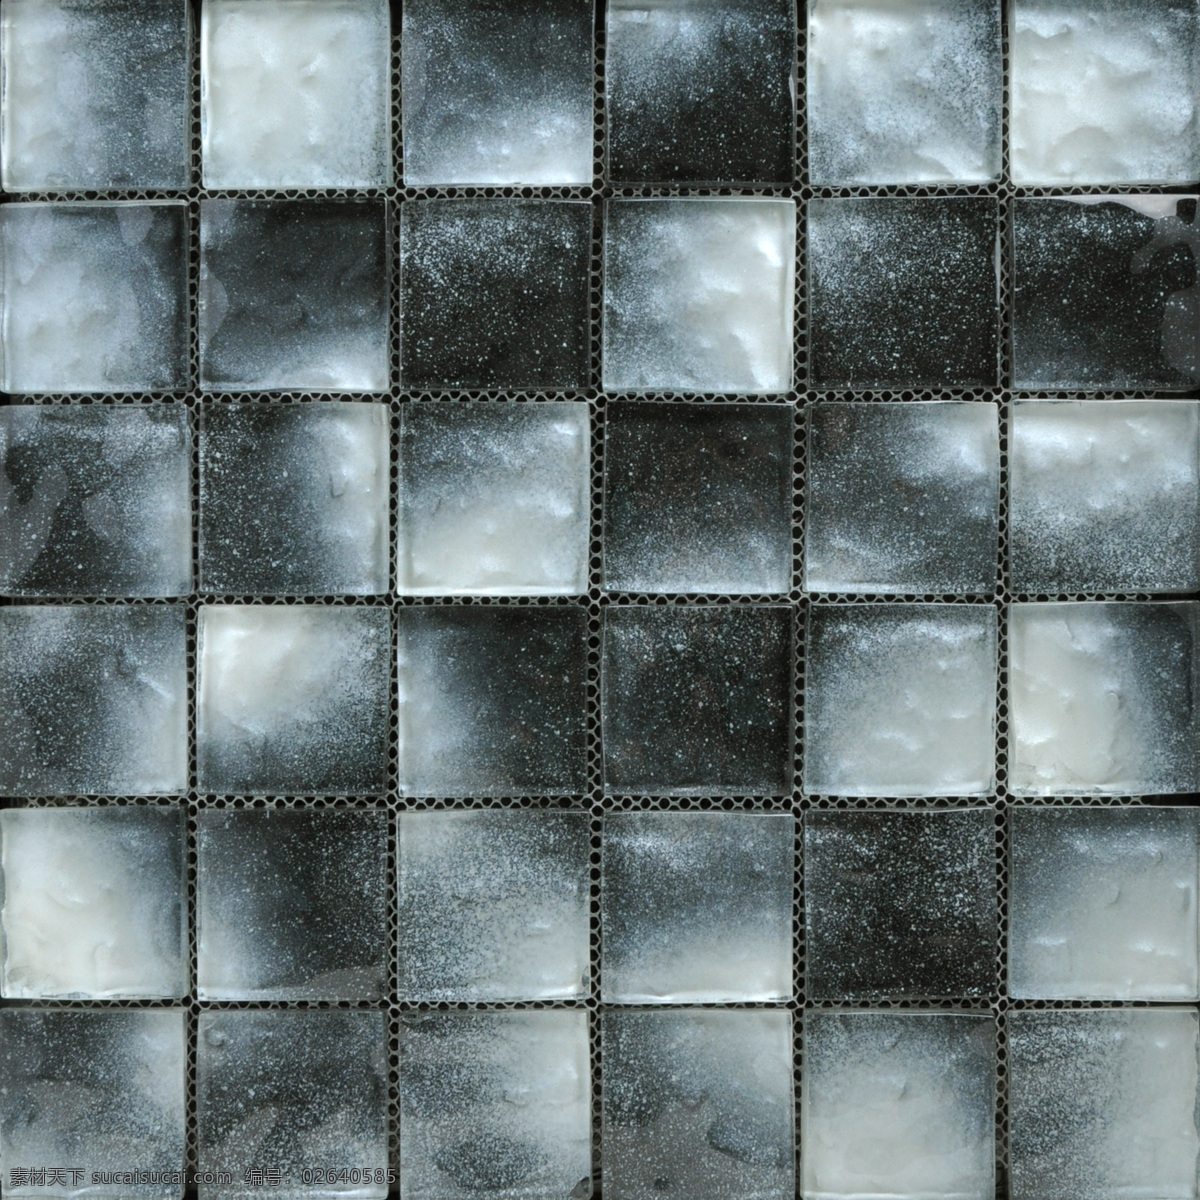 马赛克 地板砖 3d后期 地砖 建筑材料 室内设计素材 效果图后期 装修效果图 灰色 渐变 水晶 玻璃 拼图背景墙贴 卫生间建材 3d 材质 贴图